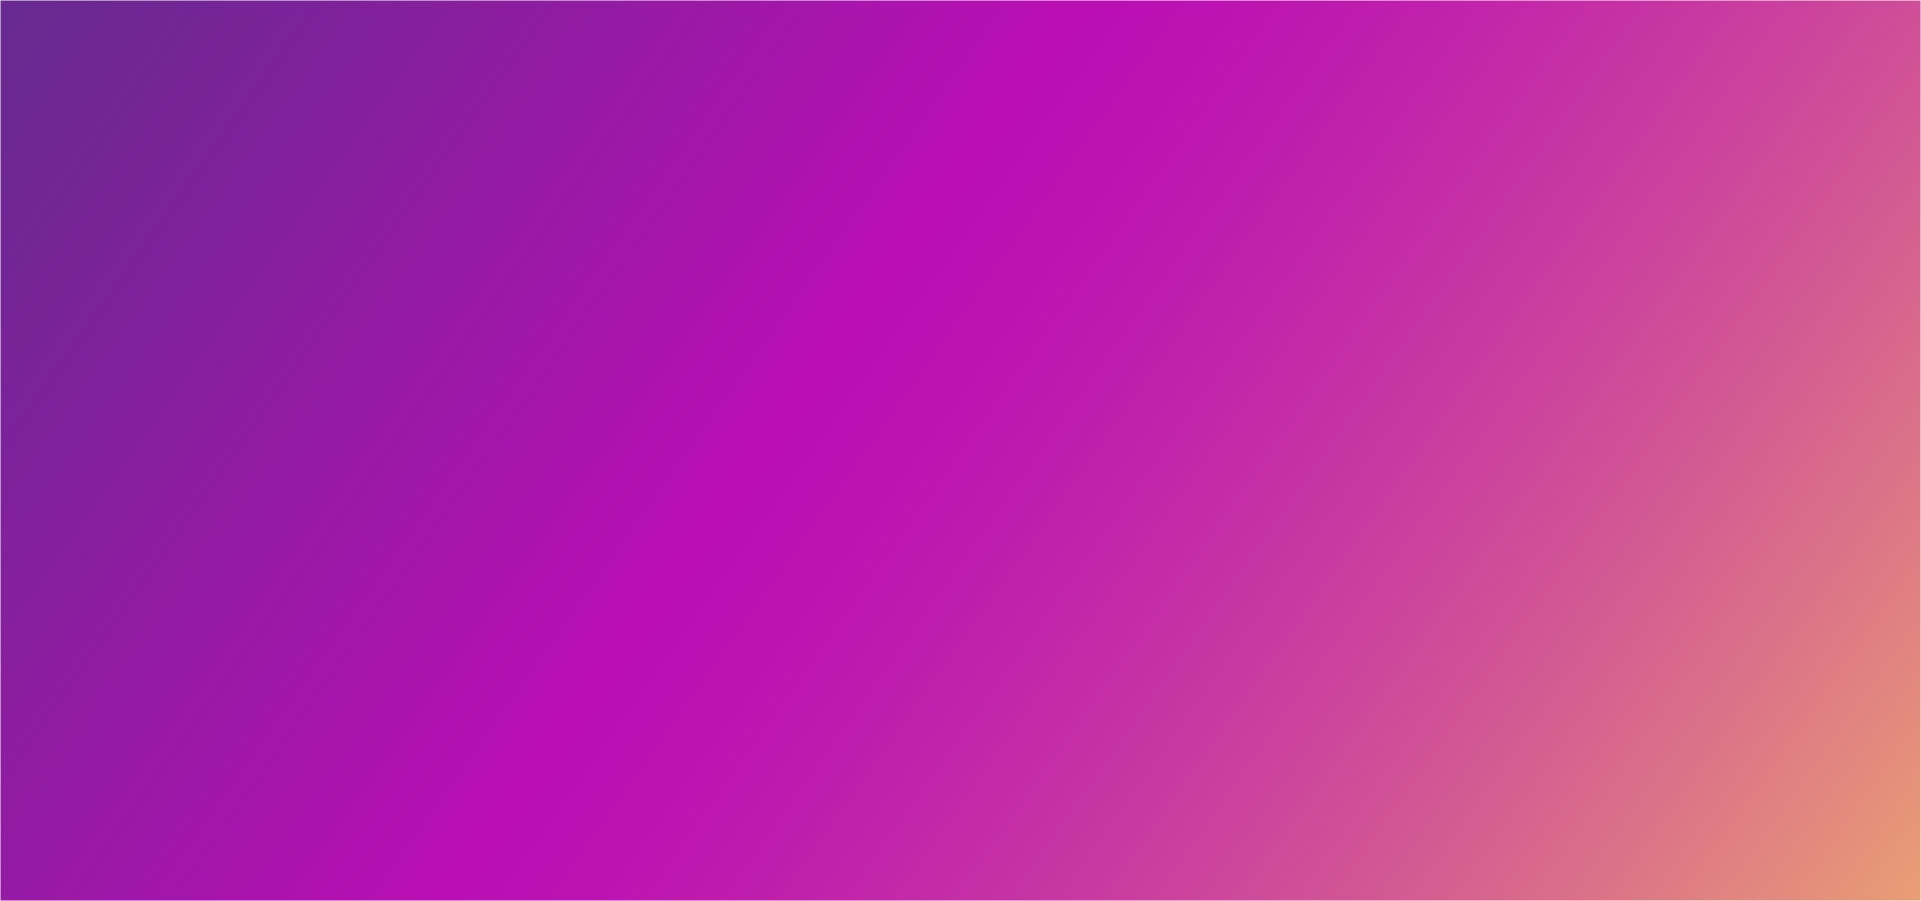 抽象的粉红色紫色发光面料渐变的光柔软细腻边缘模糊矢量素材